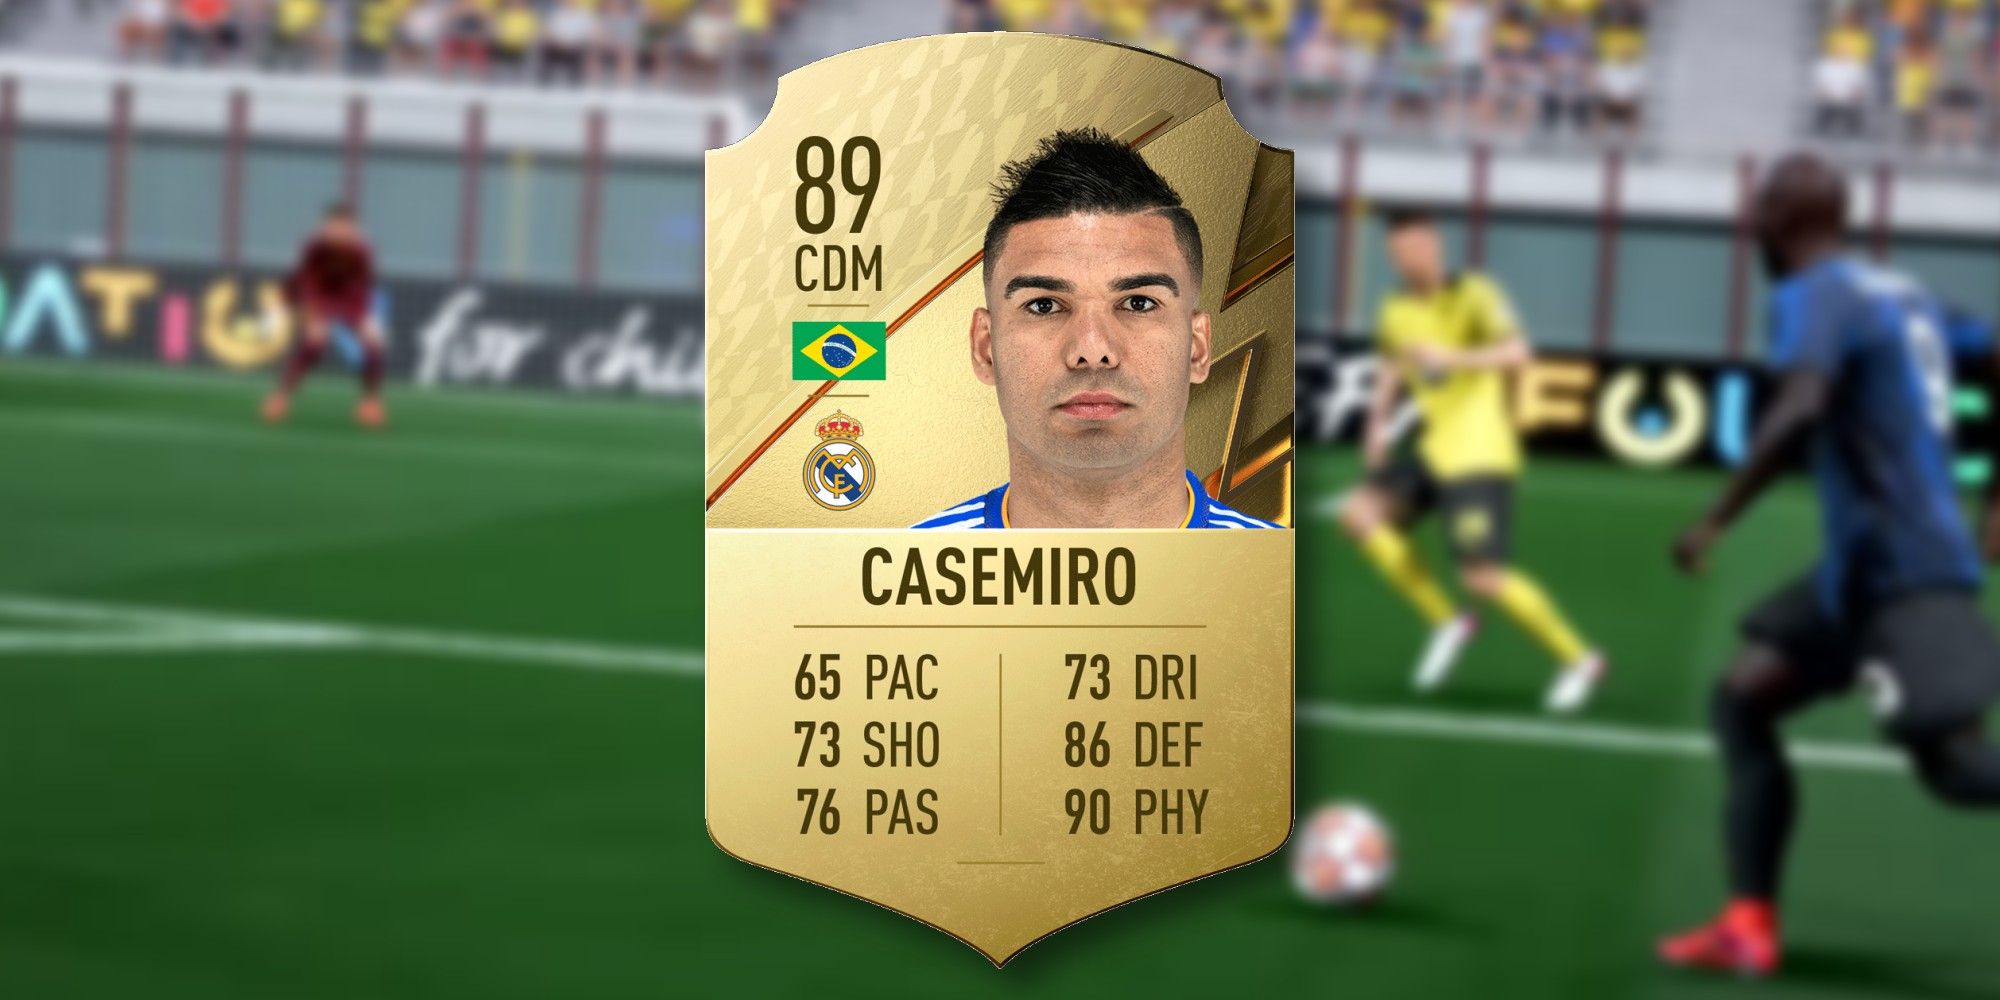 FIFA 22 casemiro card